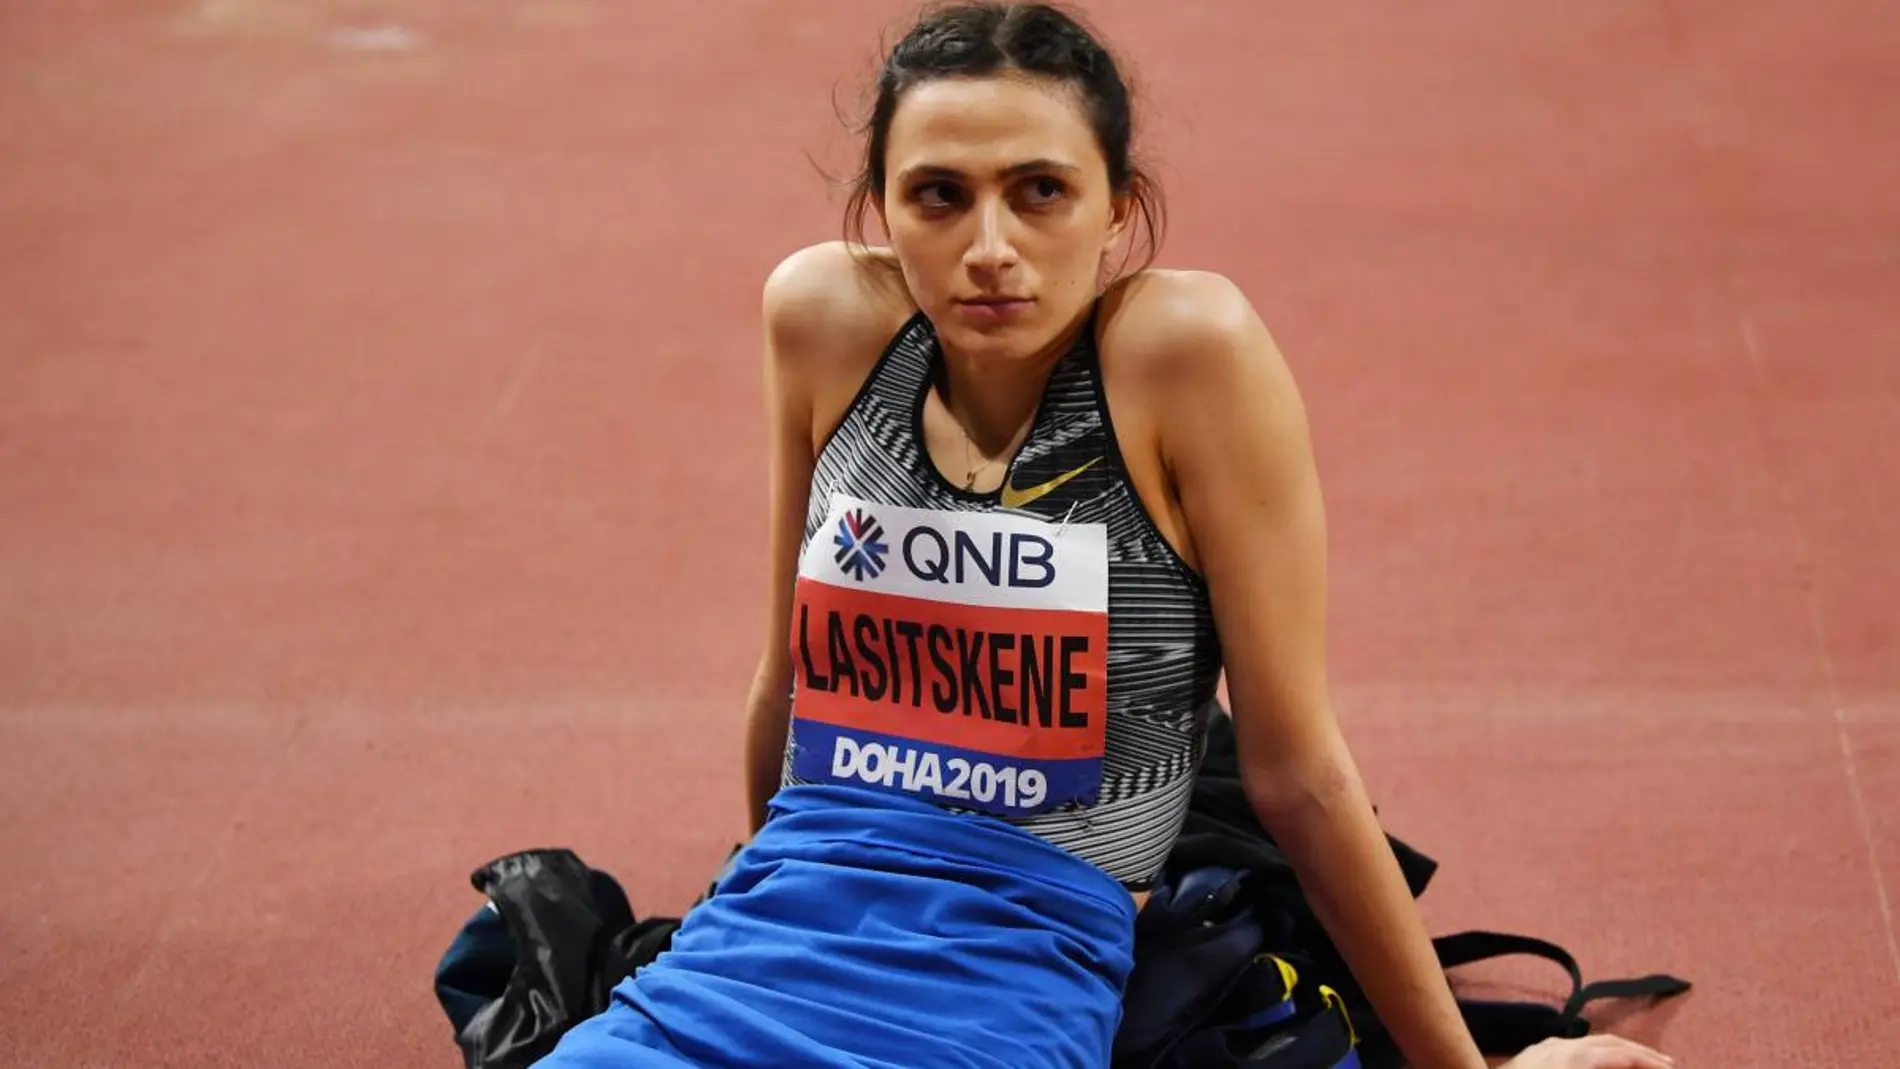 María Lasitskene, campeona mundial de salto de altura, compitió en los Mundiales de Doha 2019 bajo bandera neutral / Reuters